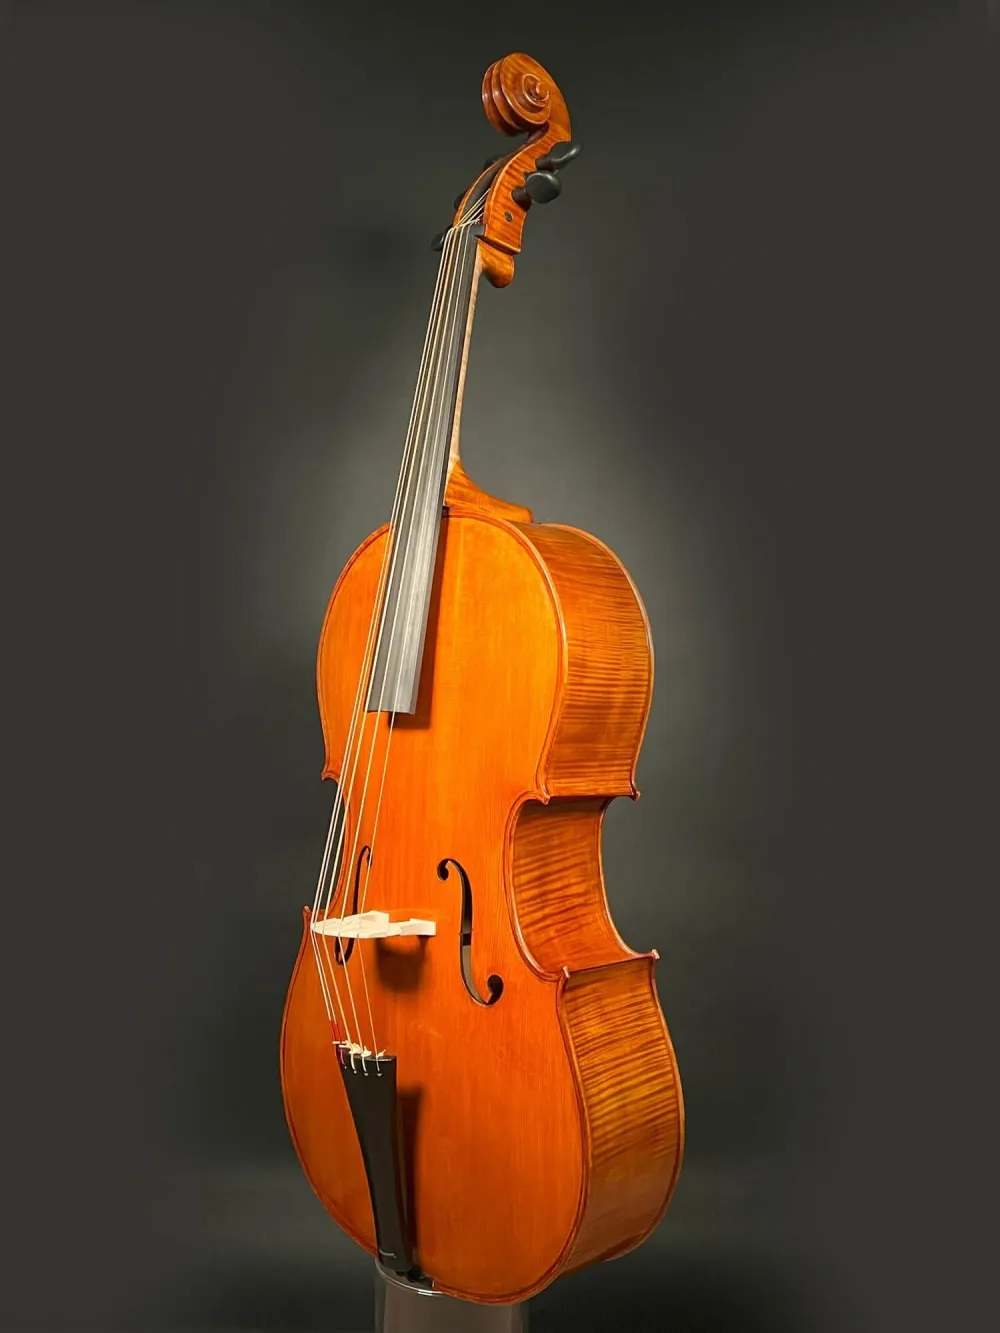 Seite-Decke-Zarge-komplett-Detailansicht eines Reghino 5Saiter Cello Piccolo Handarbeit 2021